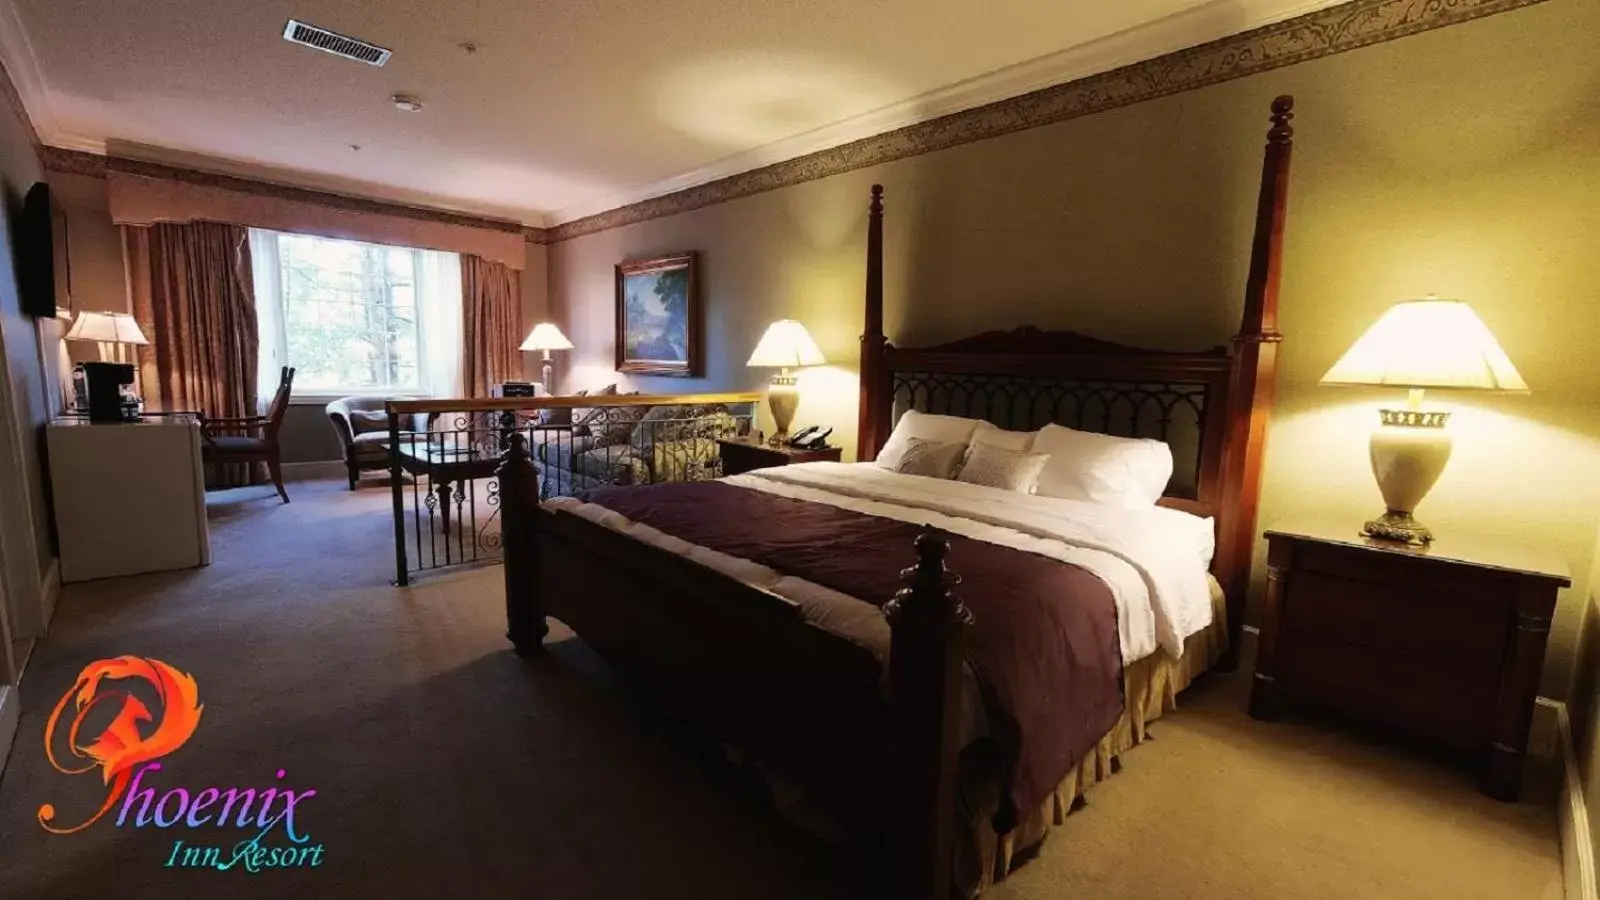 Bedroom, Bed in Phoenix Inn Resort